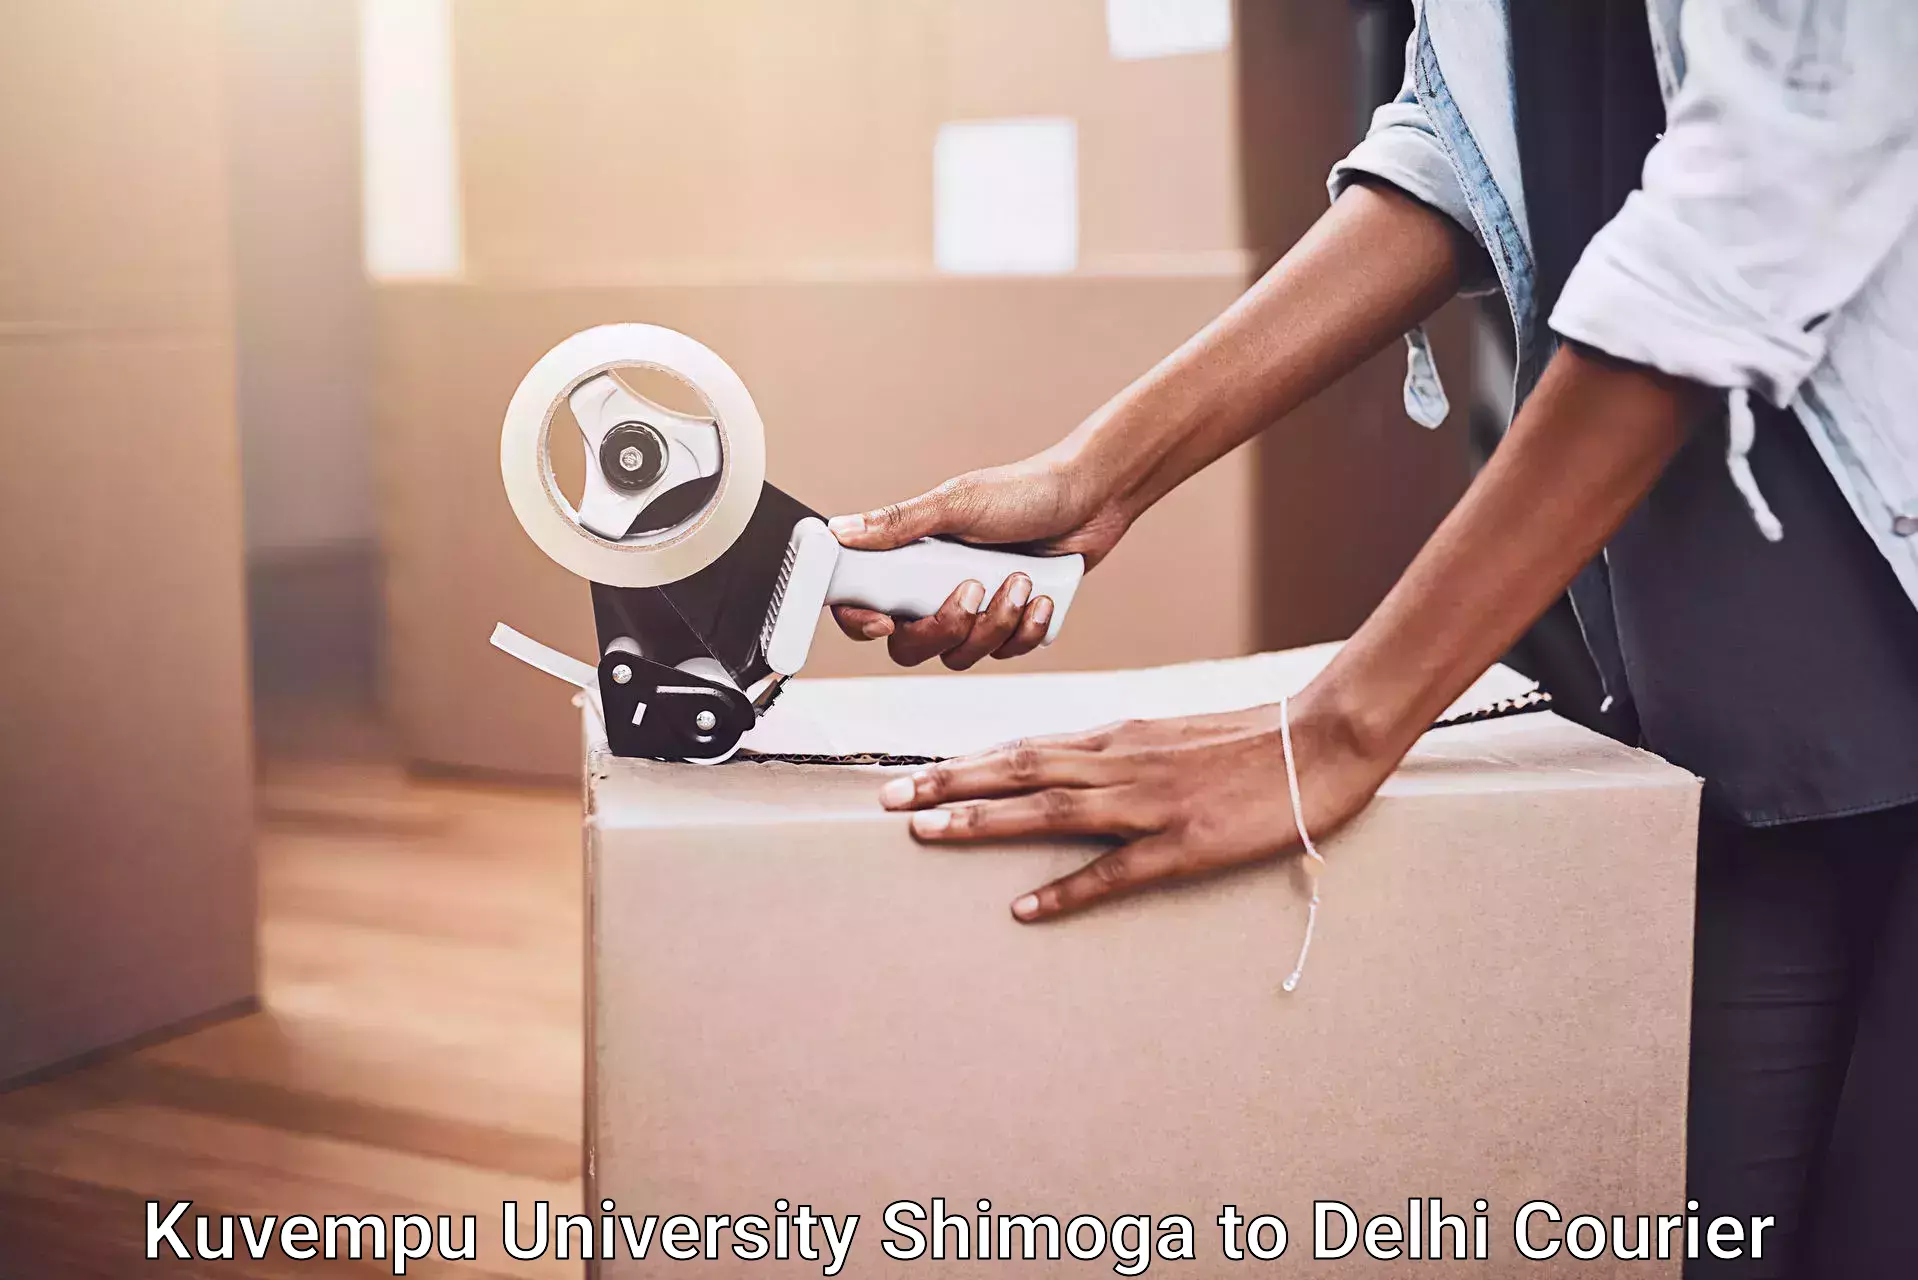 Furniture transport company Kuvempu University Shimoga to Krishna Nagar